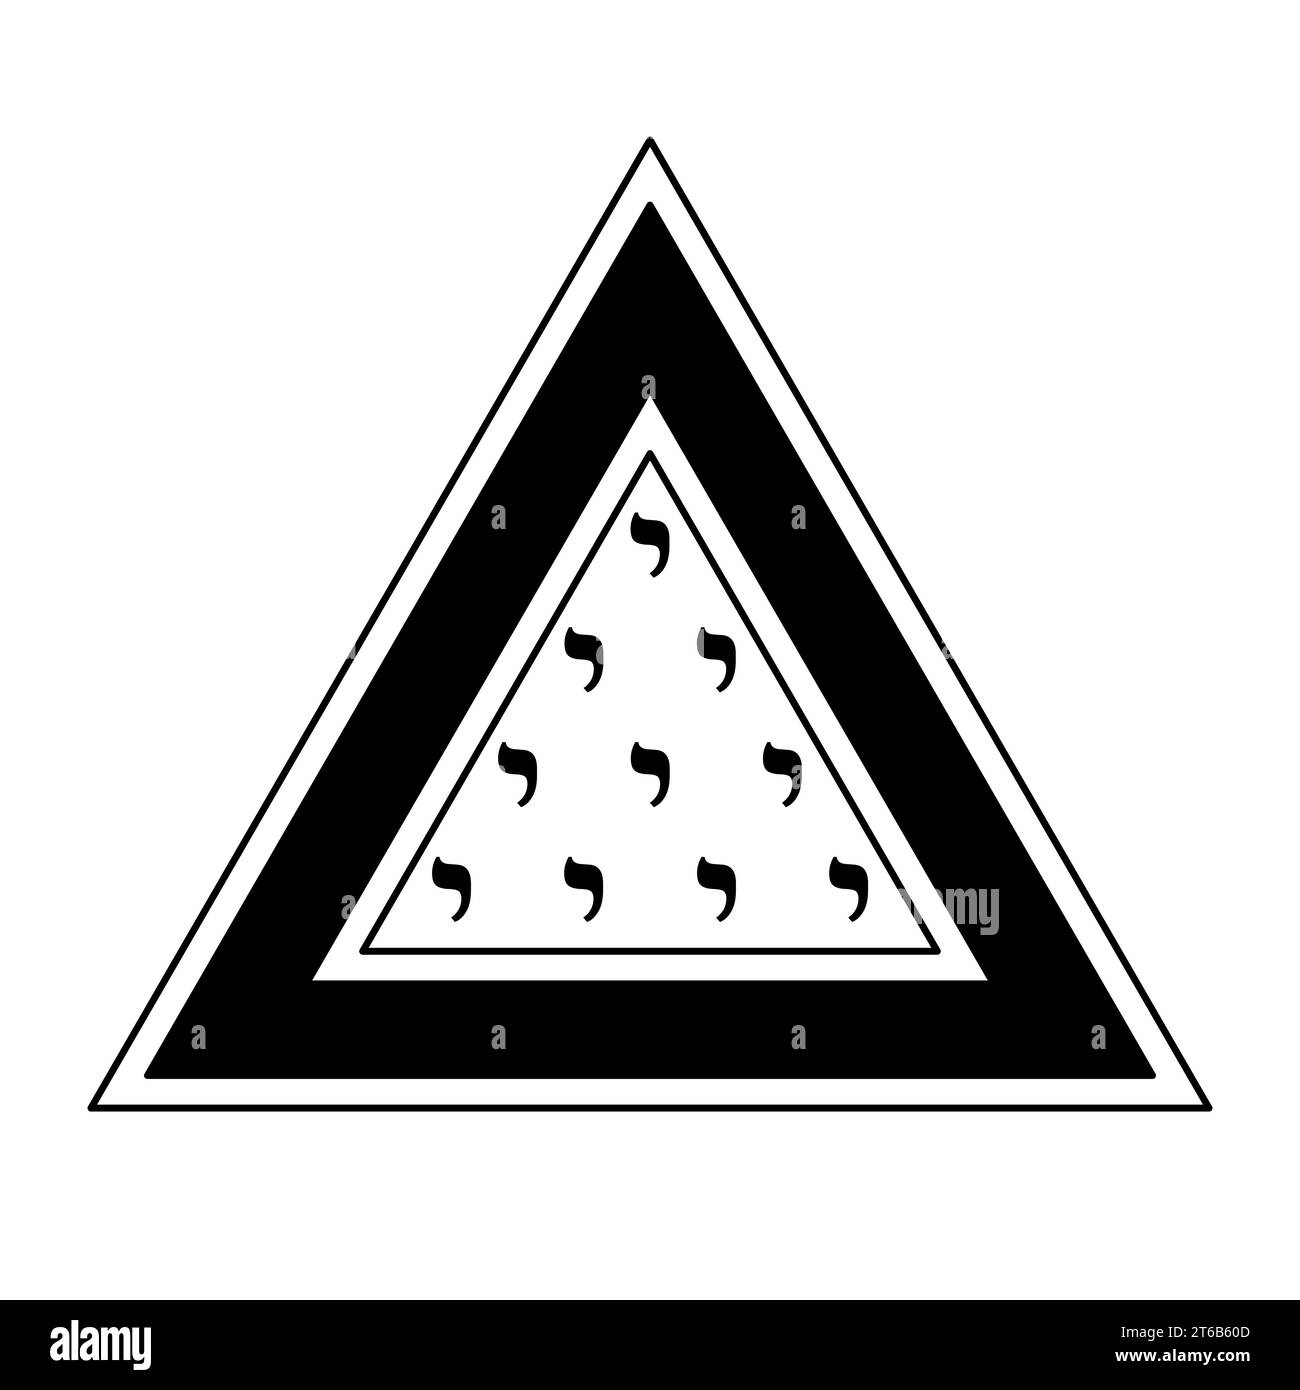 Symbole Tetractys dans un triangle. Lettre Yod de l'alphabet hébreu avec la valeur numérique 10, dix fois arrangée en quatre rangées à une figure triangulaire. Banque D'Images